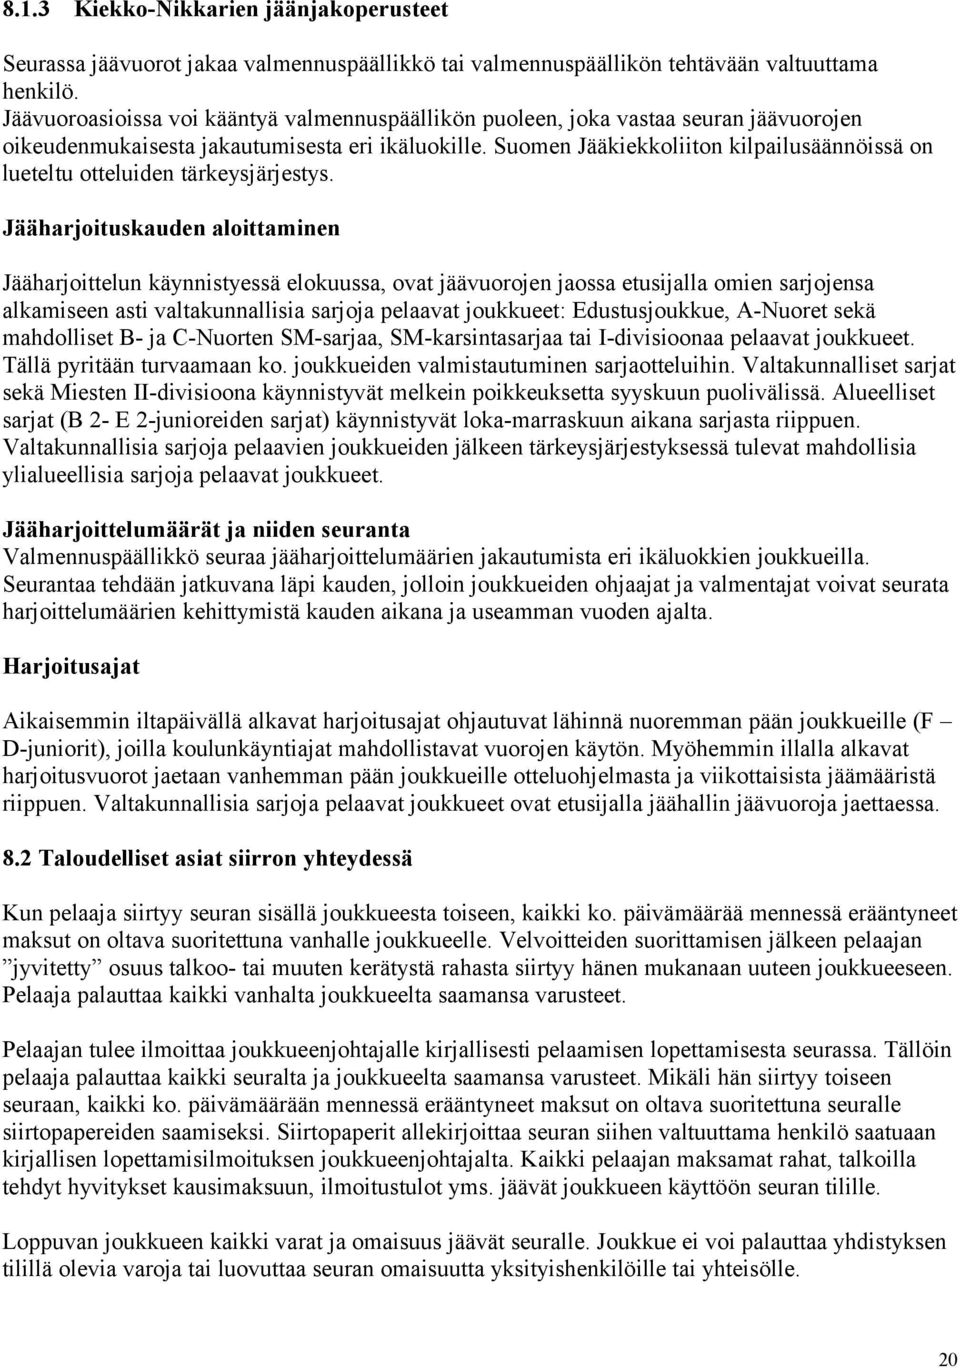 Suomen Jääkiekkoliiton kilpailusäännöissä on lueteltu otteluiden tärkeysjärjestys.